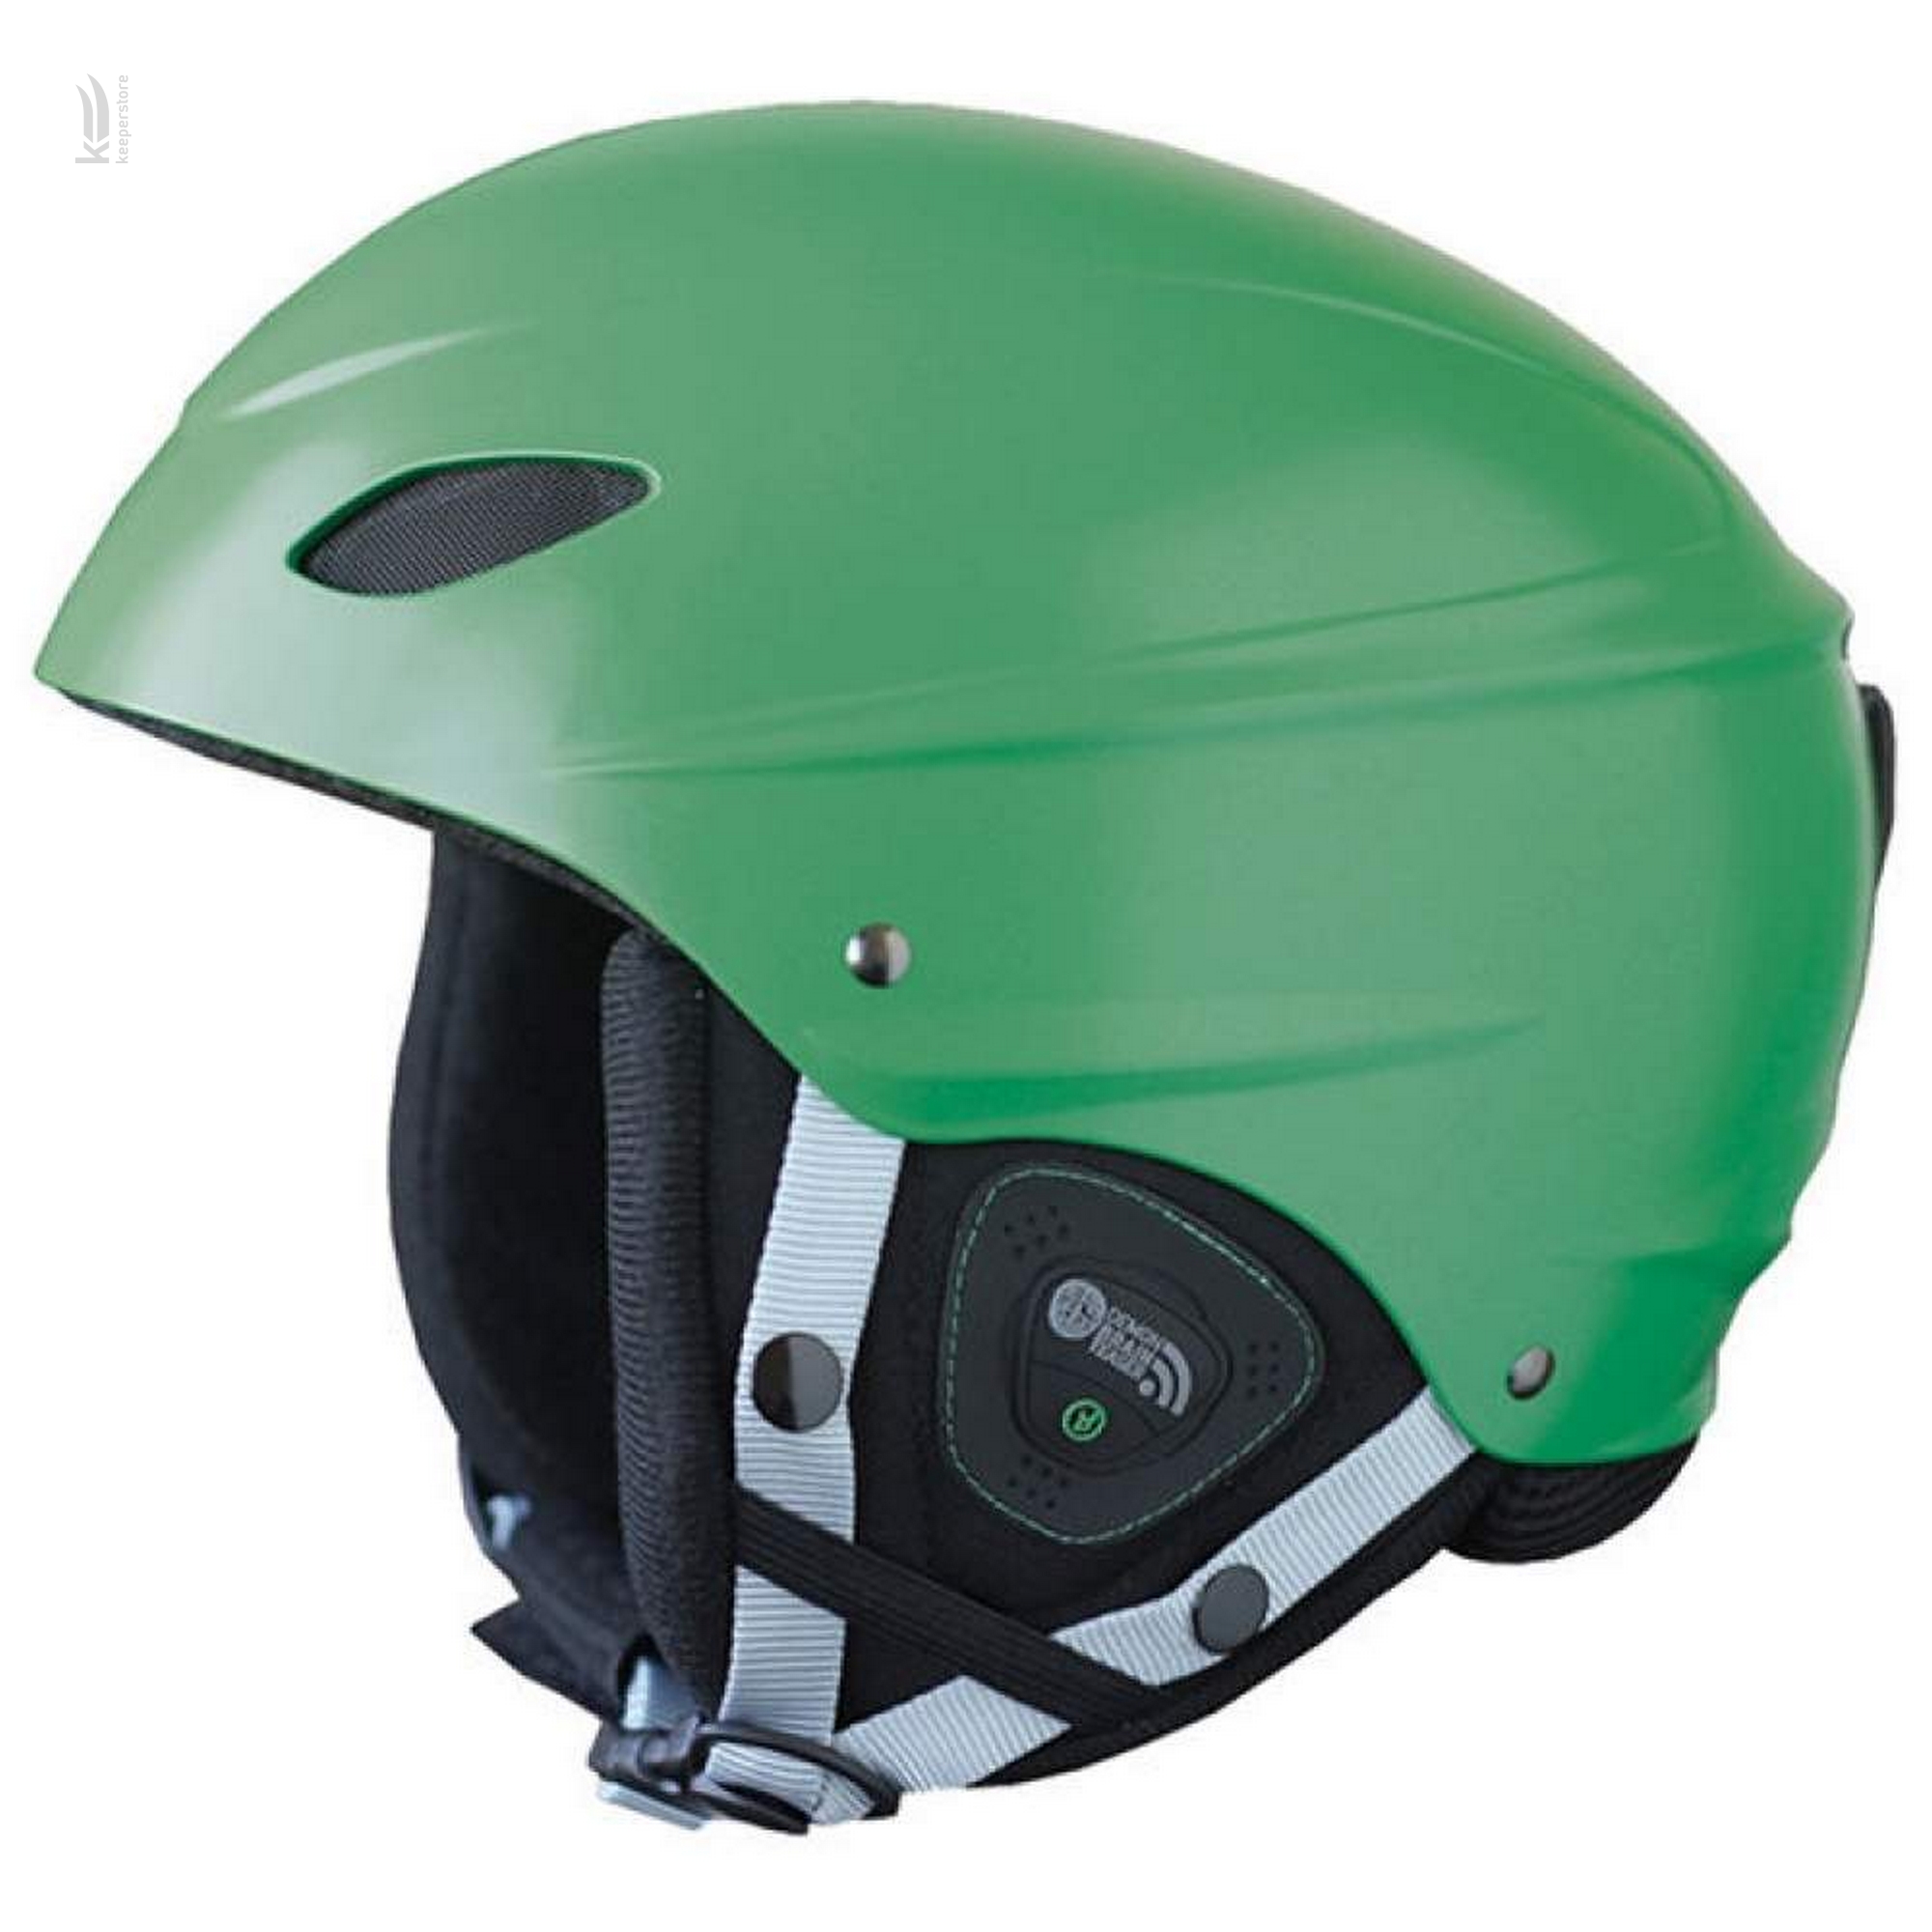 Цена шлем горнолыжный Demon Phantom Audio Green (S) в Киеве